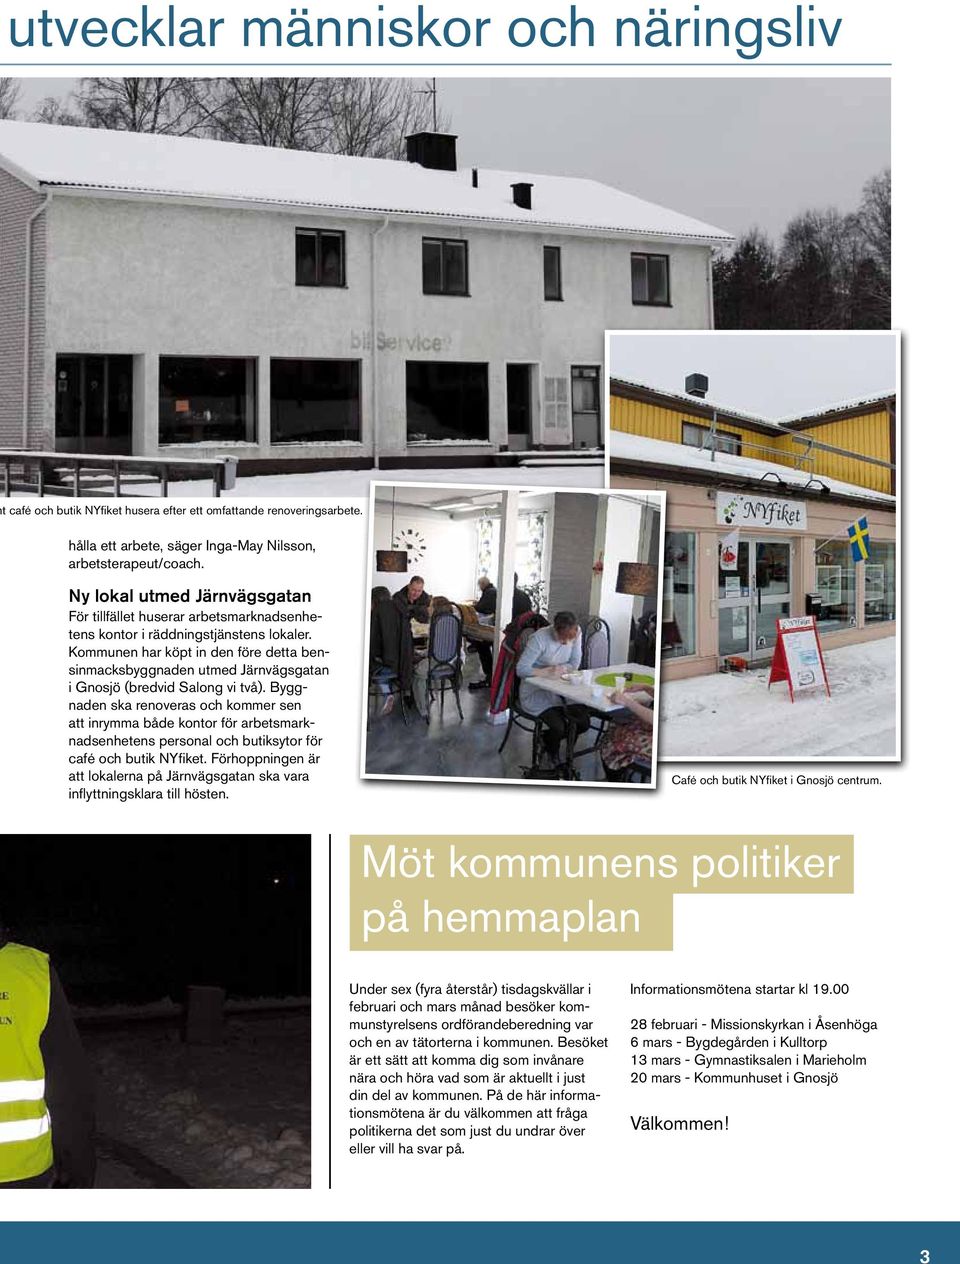 Kommunen har köpt in den före detta bensinmacksbyggnaden utmed Järnvägsgatan i Gnosjö (bredvid Salong vi två).